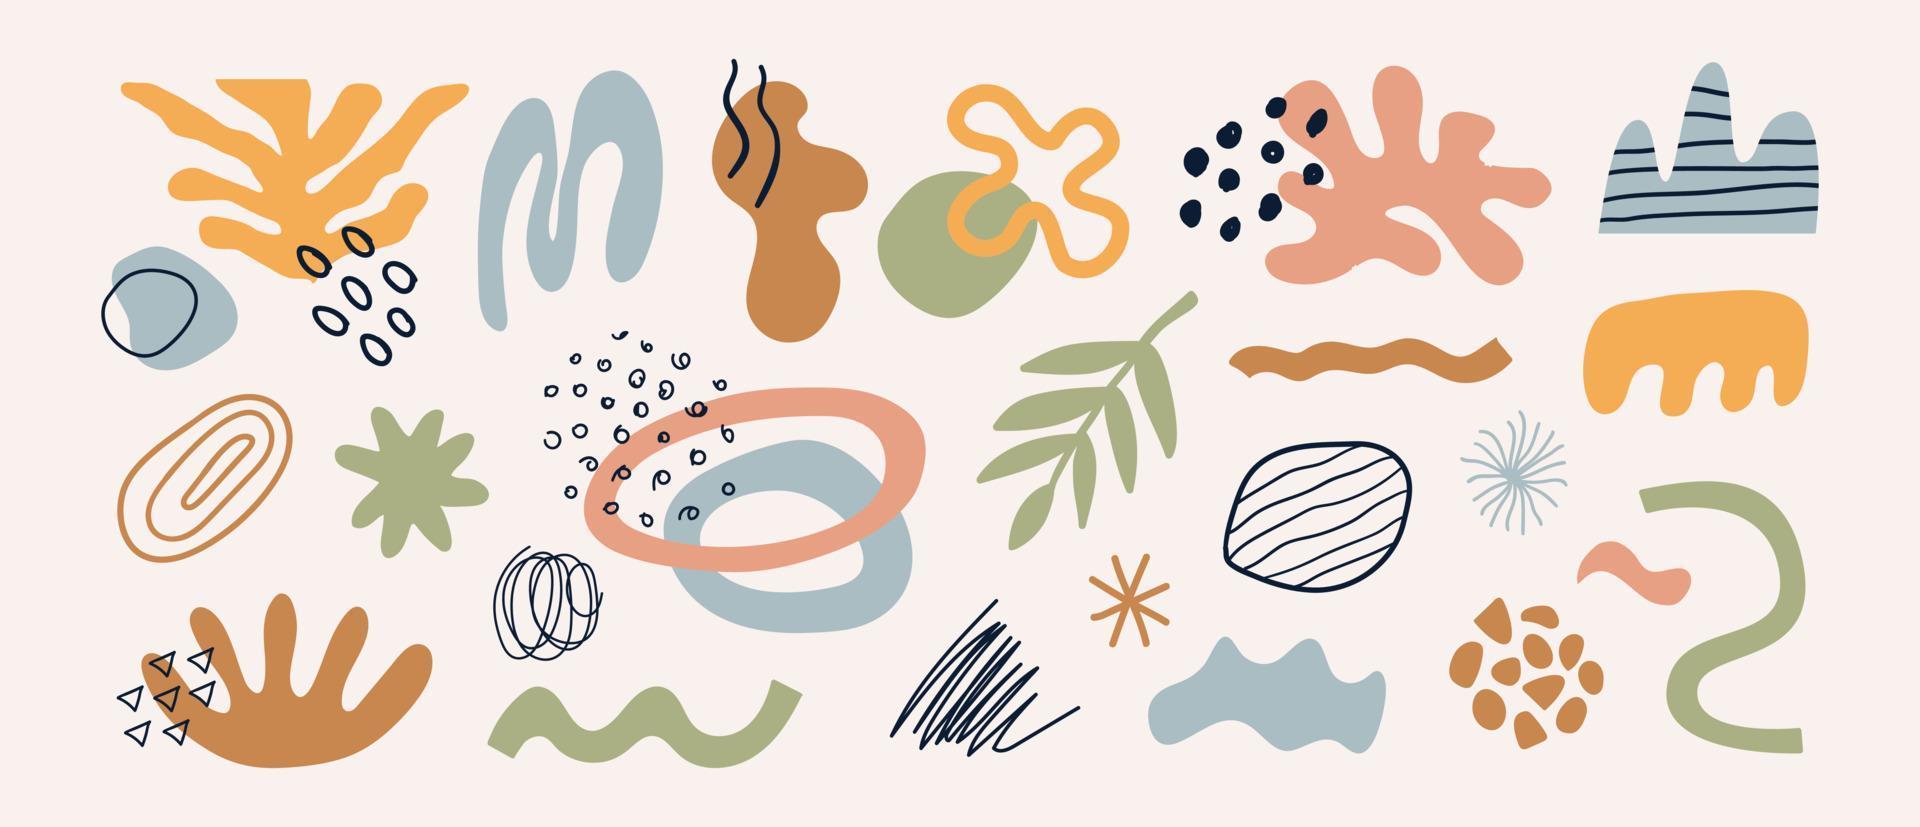 set moderno di diverse forme, piante, elementi tropicali e oggetti doodle disegnati a mano. disegno vettoriale astratto contemporaneo alla moda. illustrazione organica naturale